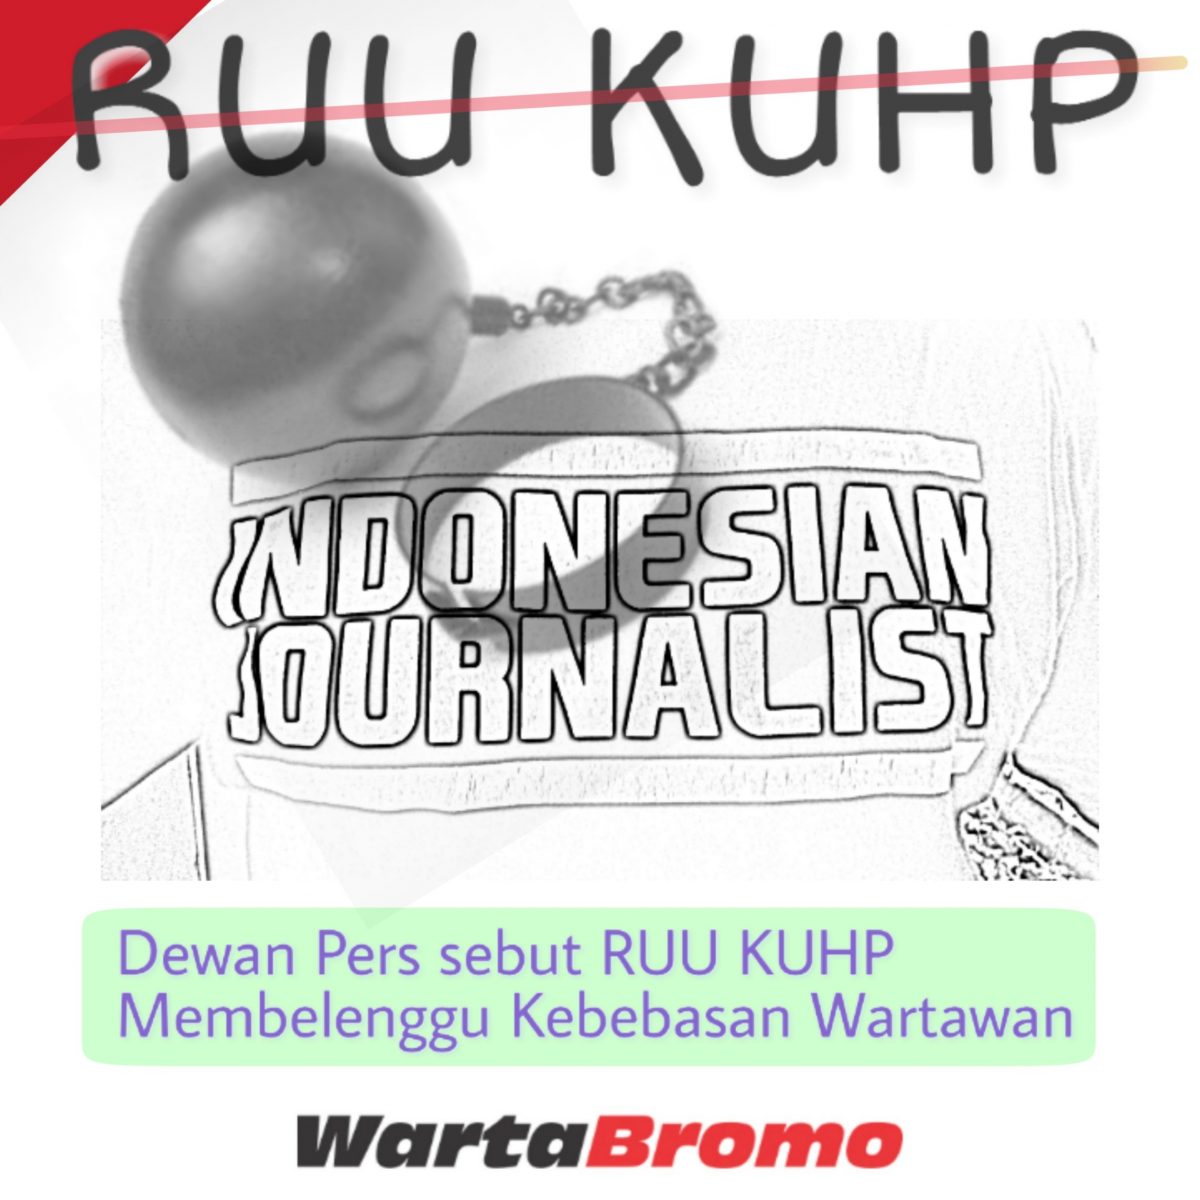 Ruu Kuhp Membelenggu Wartawan Wartabromo